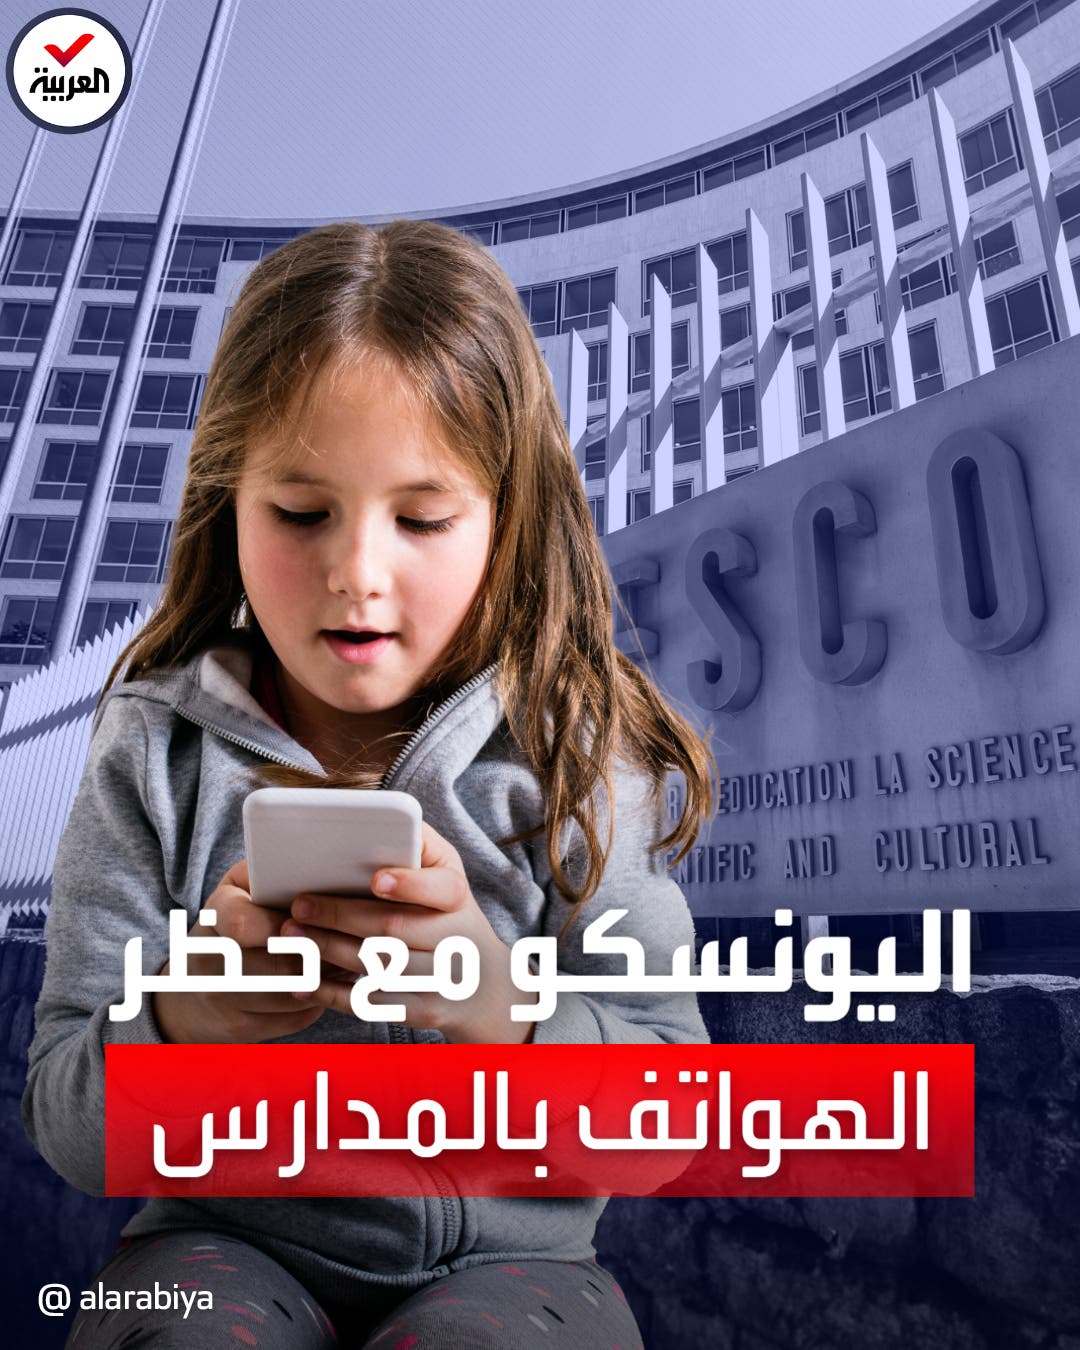 بعد حصولها على أدلة تثبت ضررها على الأطفال.. اليونسكو توصي بحظر الهواتف في المدارس